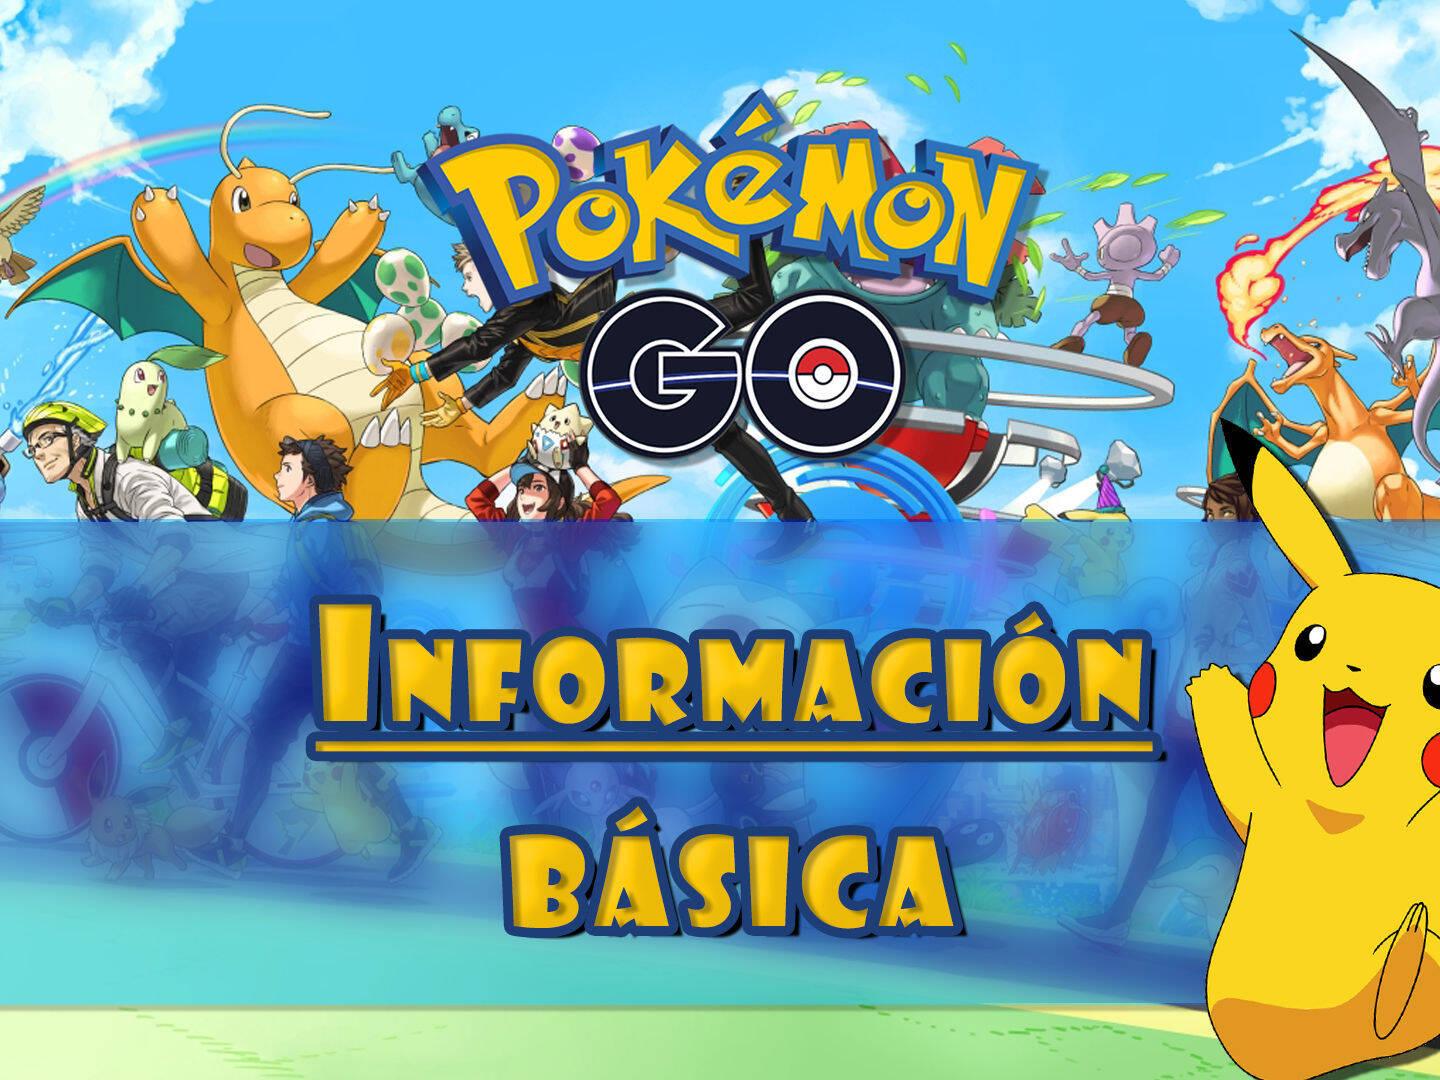 Birmania No autorizado programa Guía de información básica de Pokémon Go: Todo lo que tienes que saber